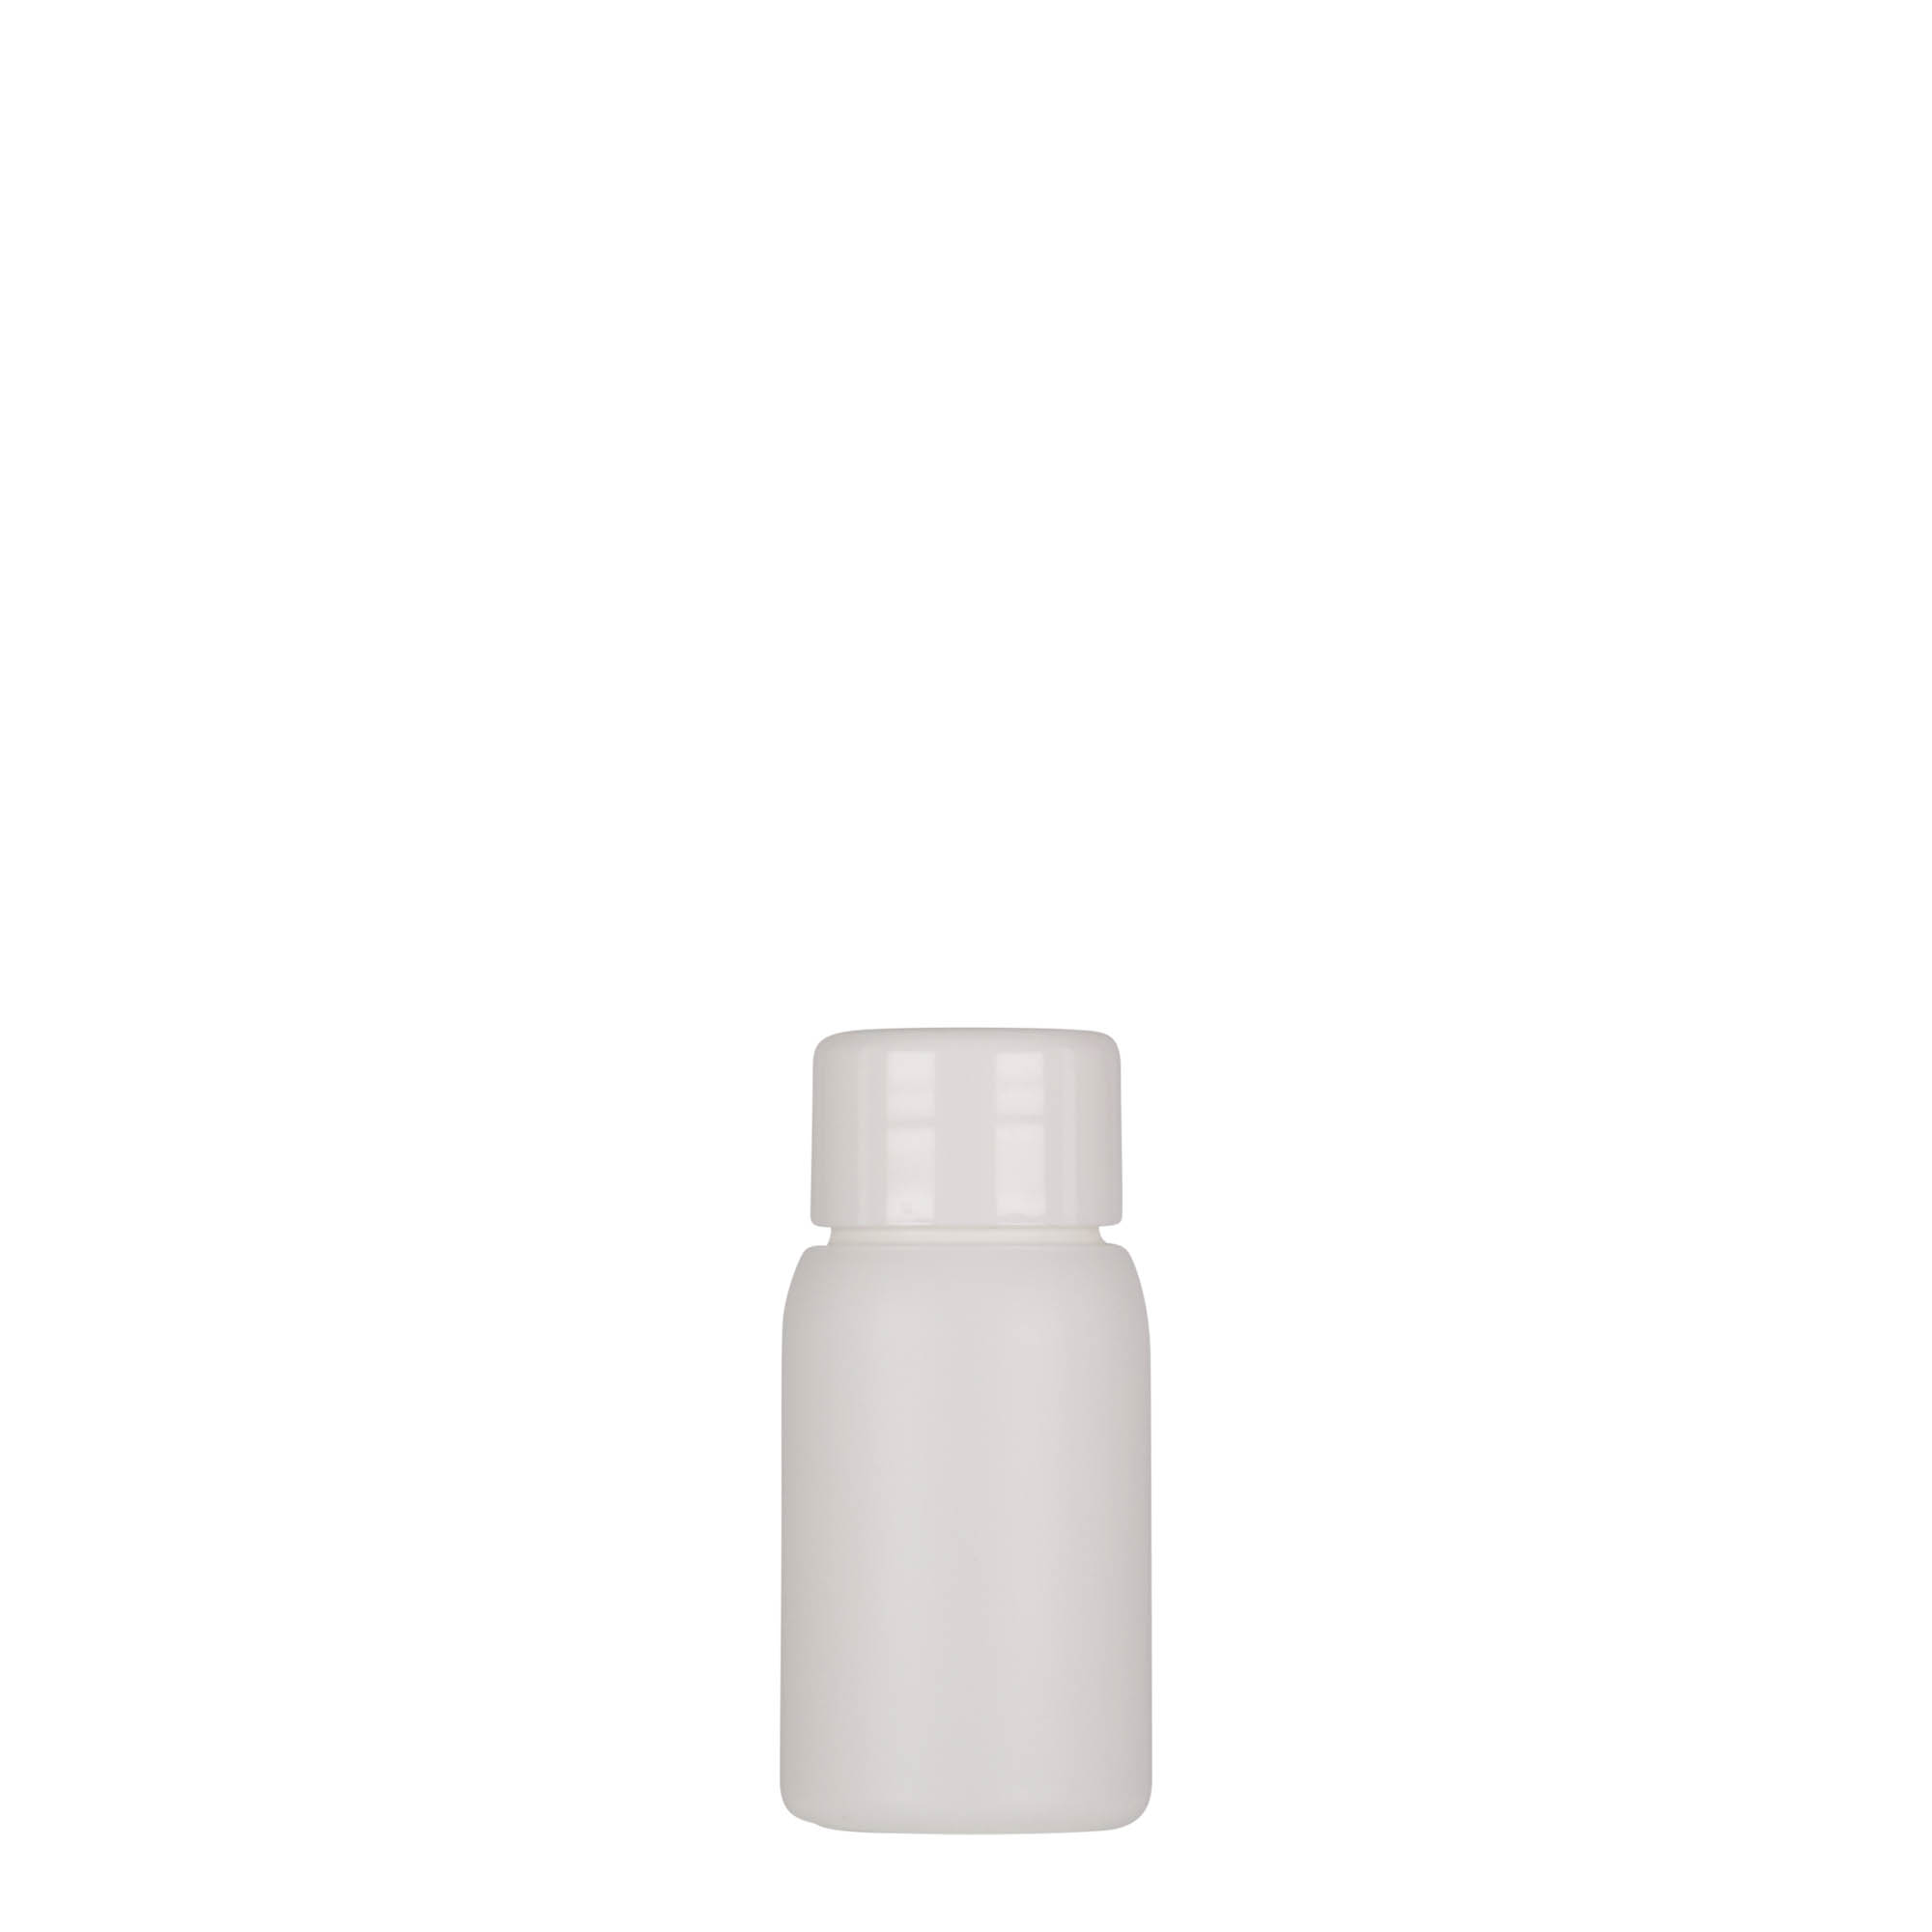 30 ml plastic bottle 'Tuffy', HDPE, white, closure: GPI 24/410